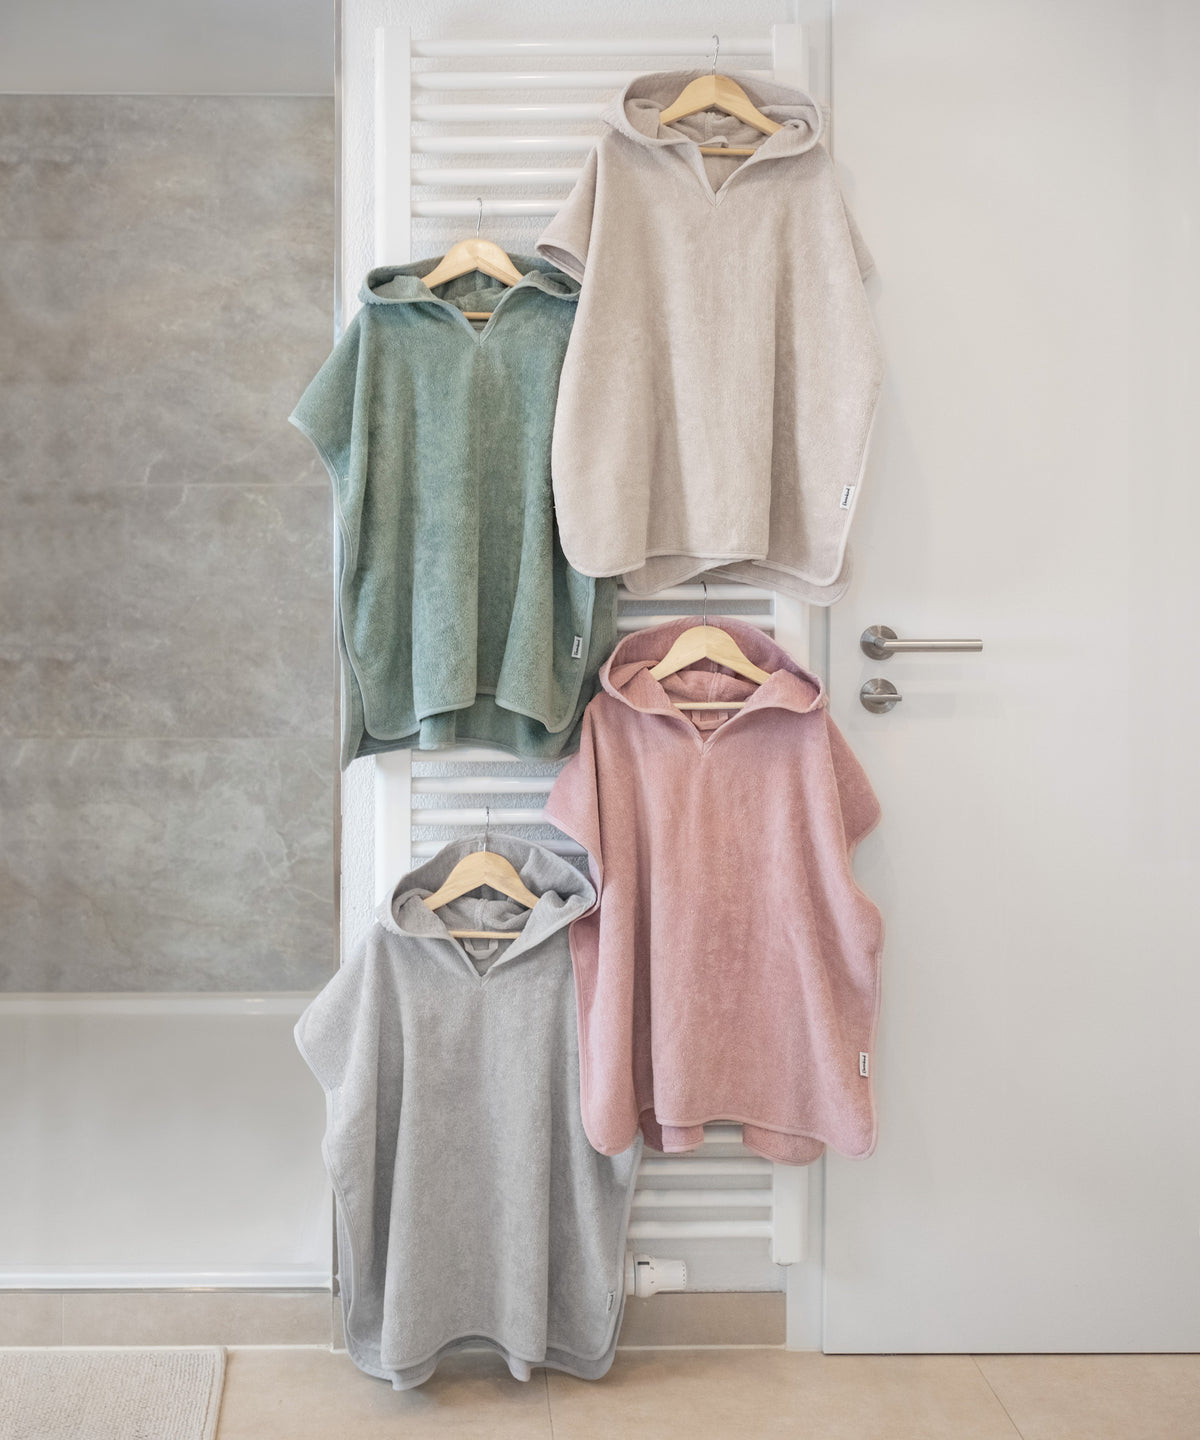 Badeponchos in vier Farben hängen auf Kleiderbügeln in Badezimmer.